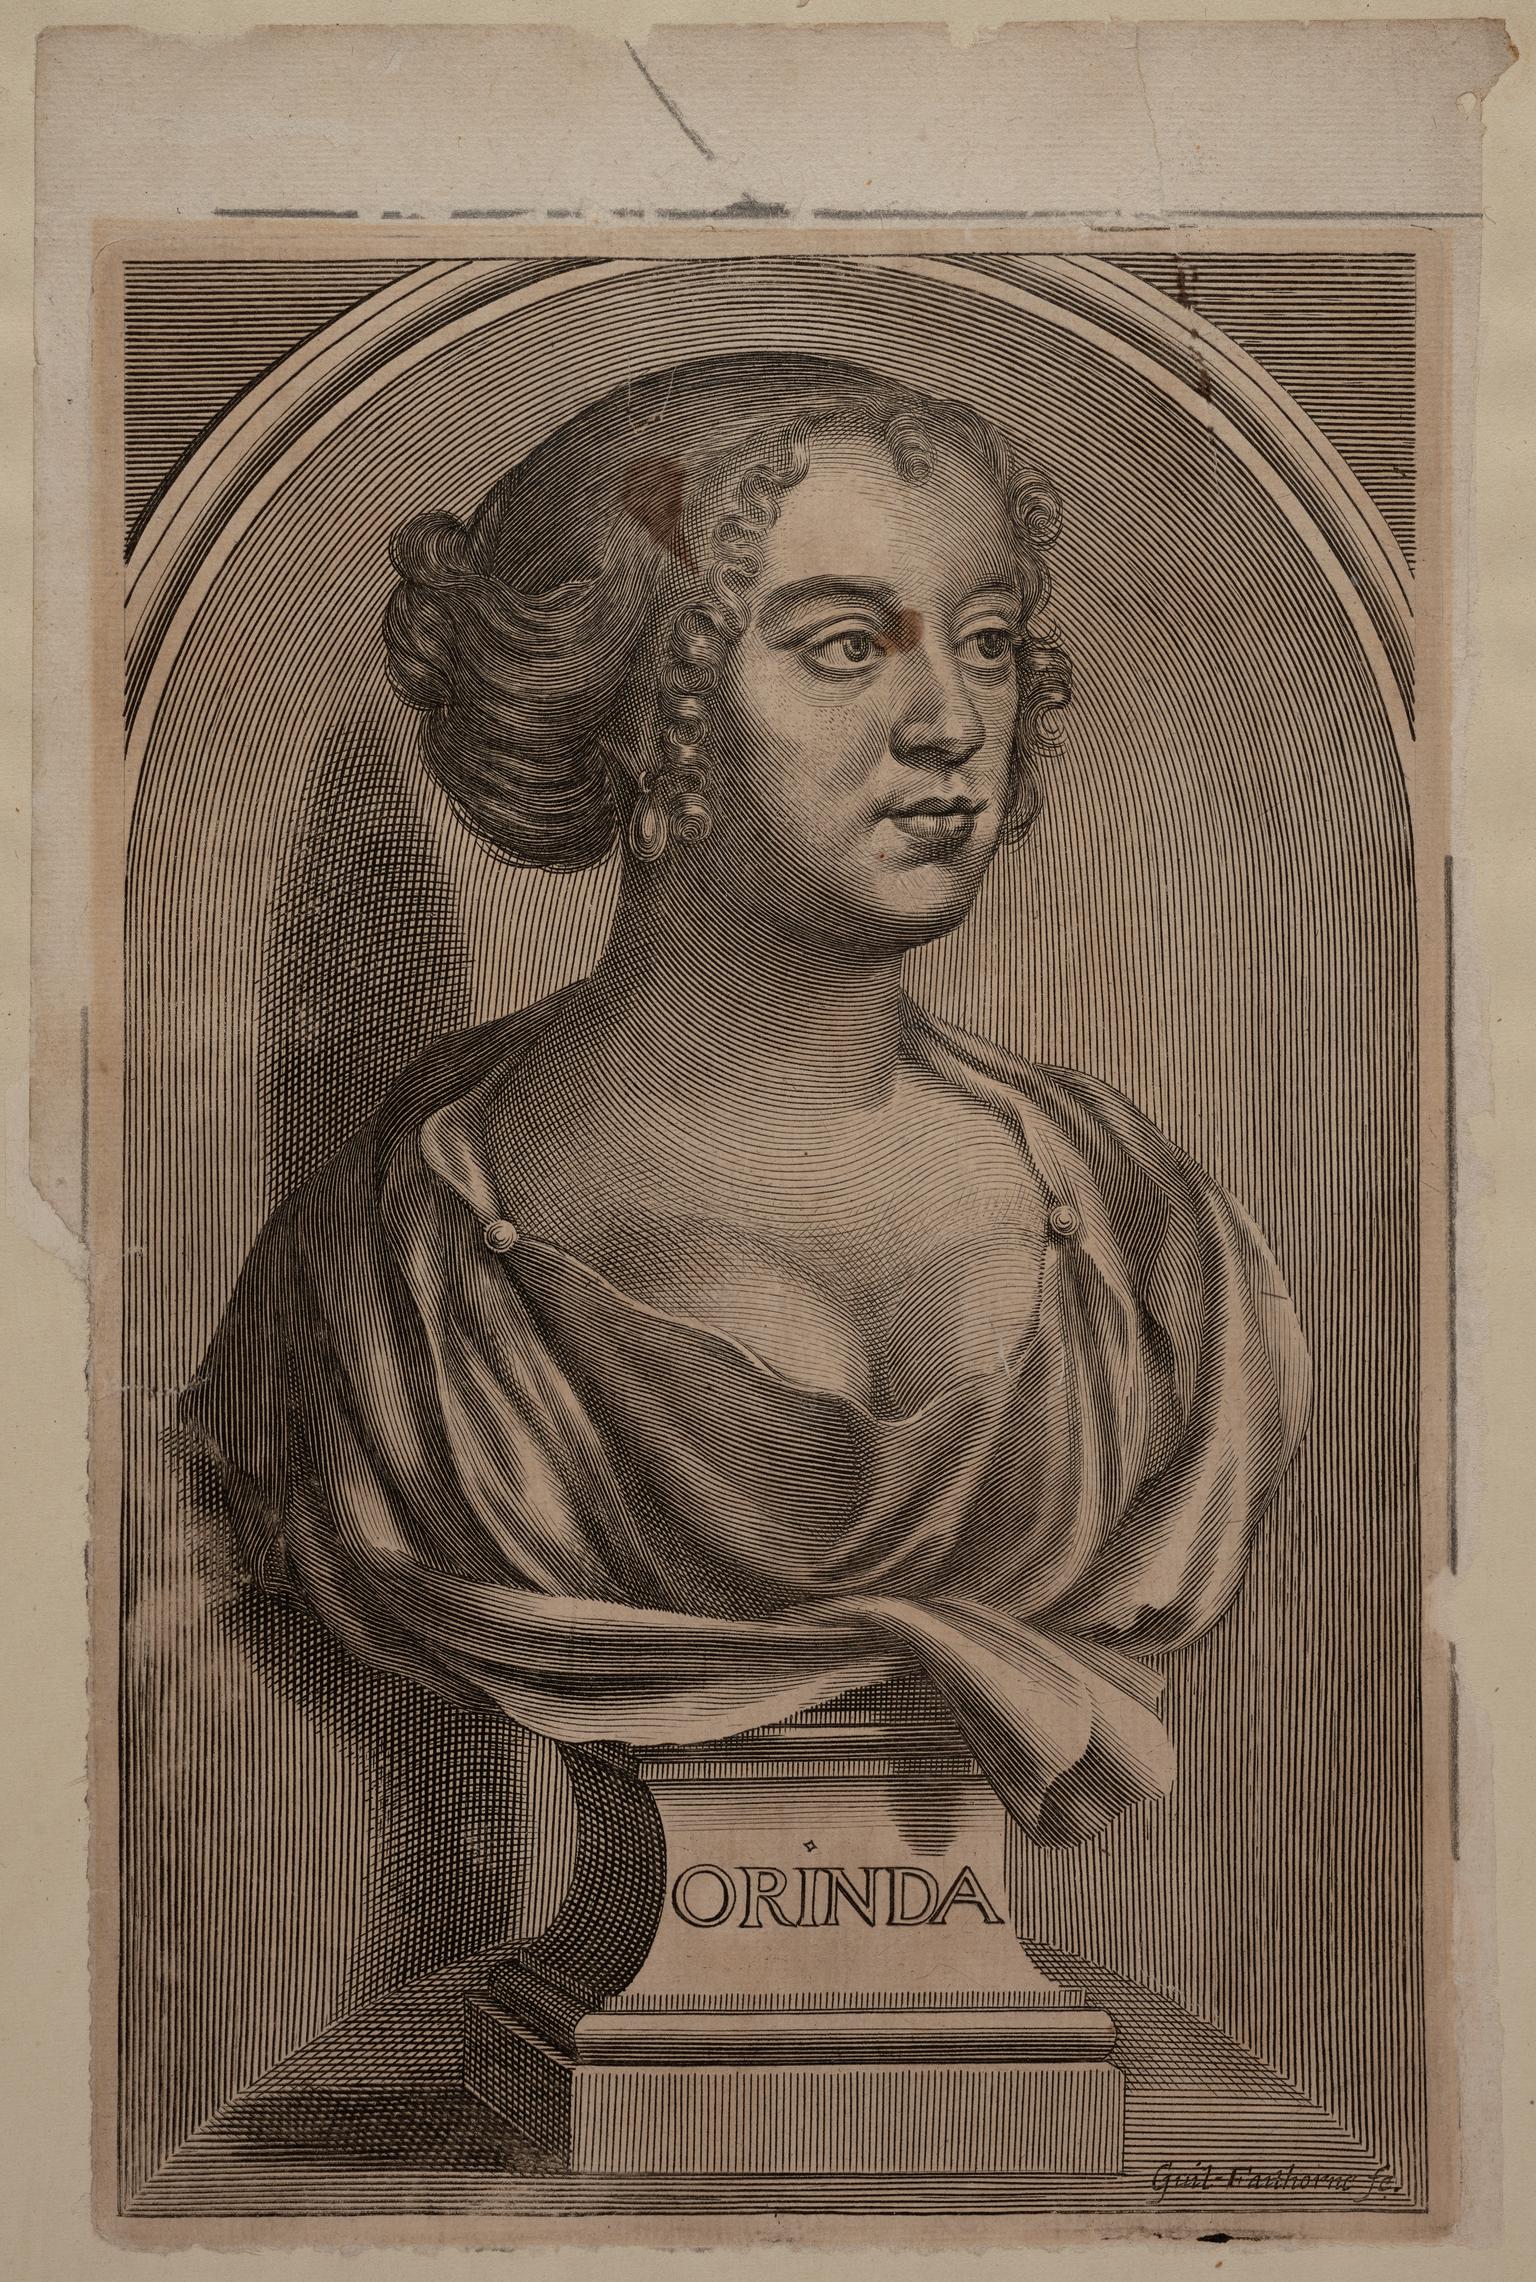 Katherine Philips ('Orinda', 1632-1664)